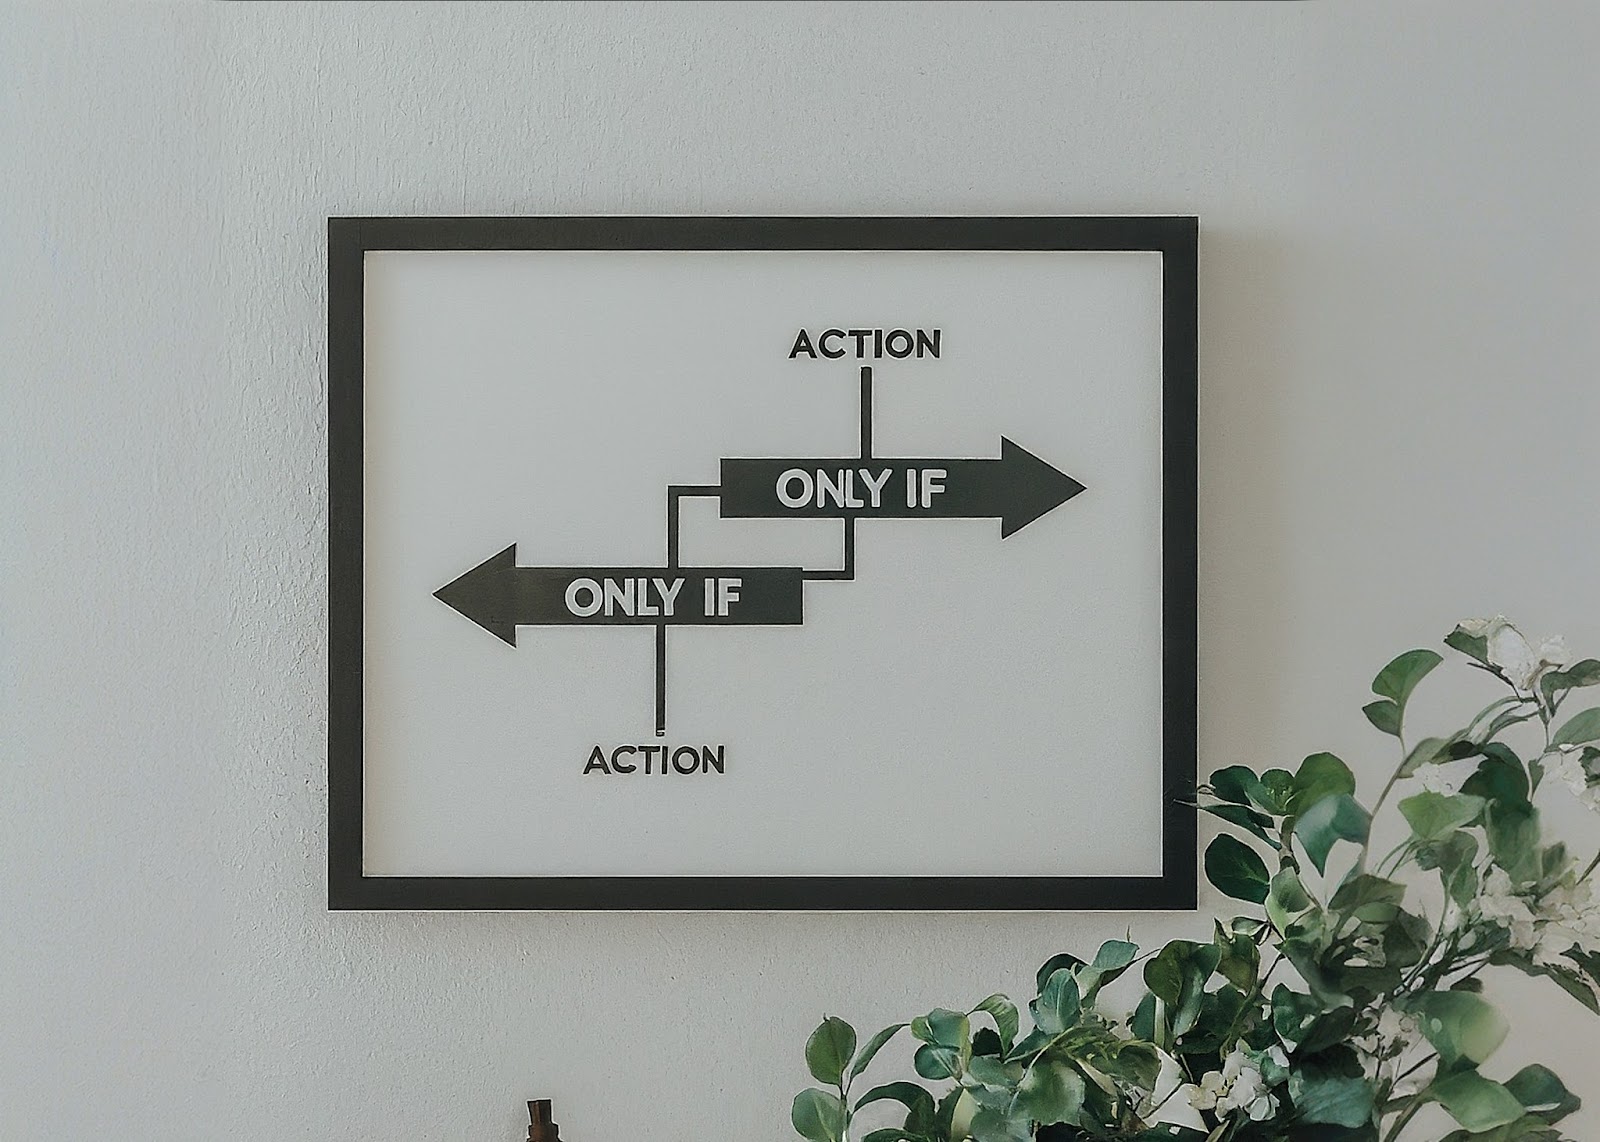 「only if」と書かれた二つの左右に向いた矢印とそれぞれの上と下に「action」と一つずつ書かれたパネルが壁にかかっている